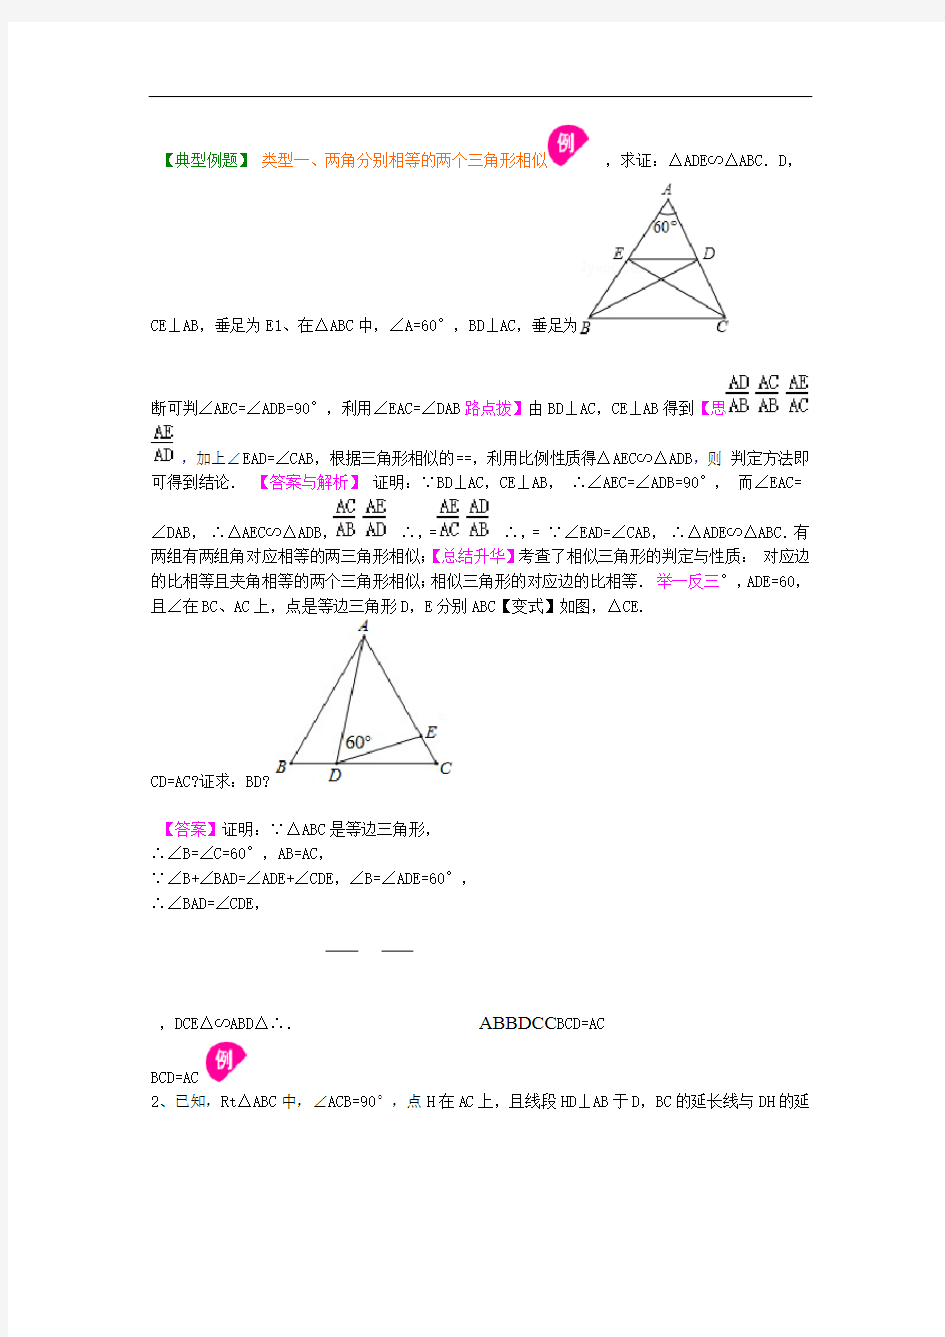 15相似三角形判定定理的证明知识讲解基础